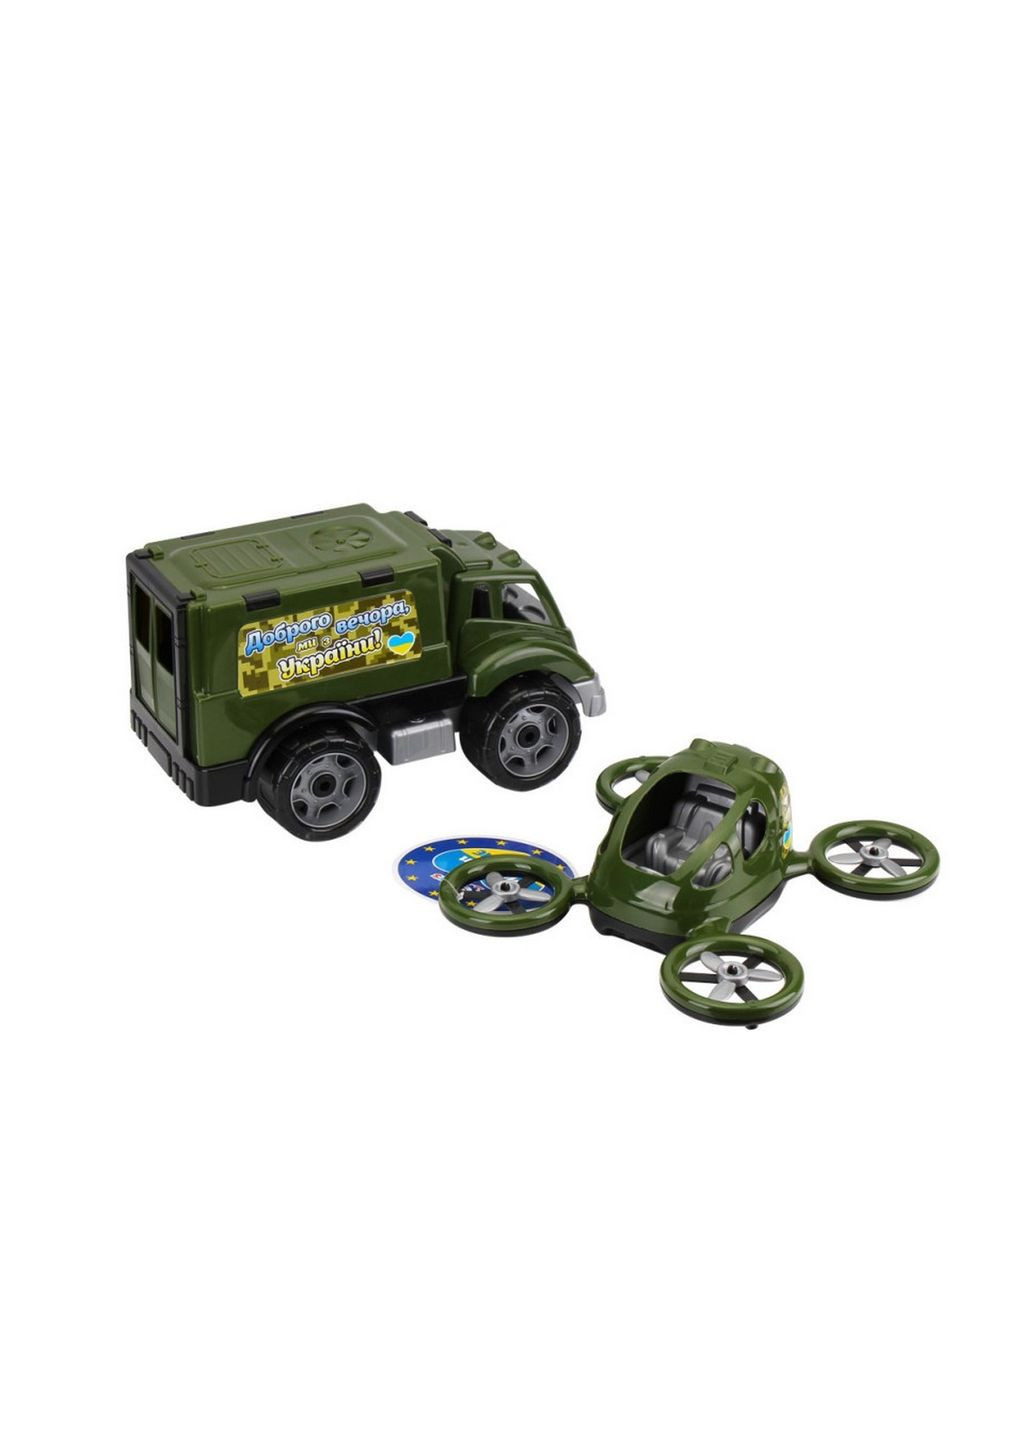 Детская игрушка "Военный транспорт" 7792 машинка с квадрокоптером ТехноК (282933343)